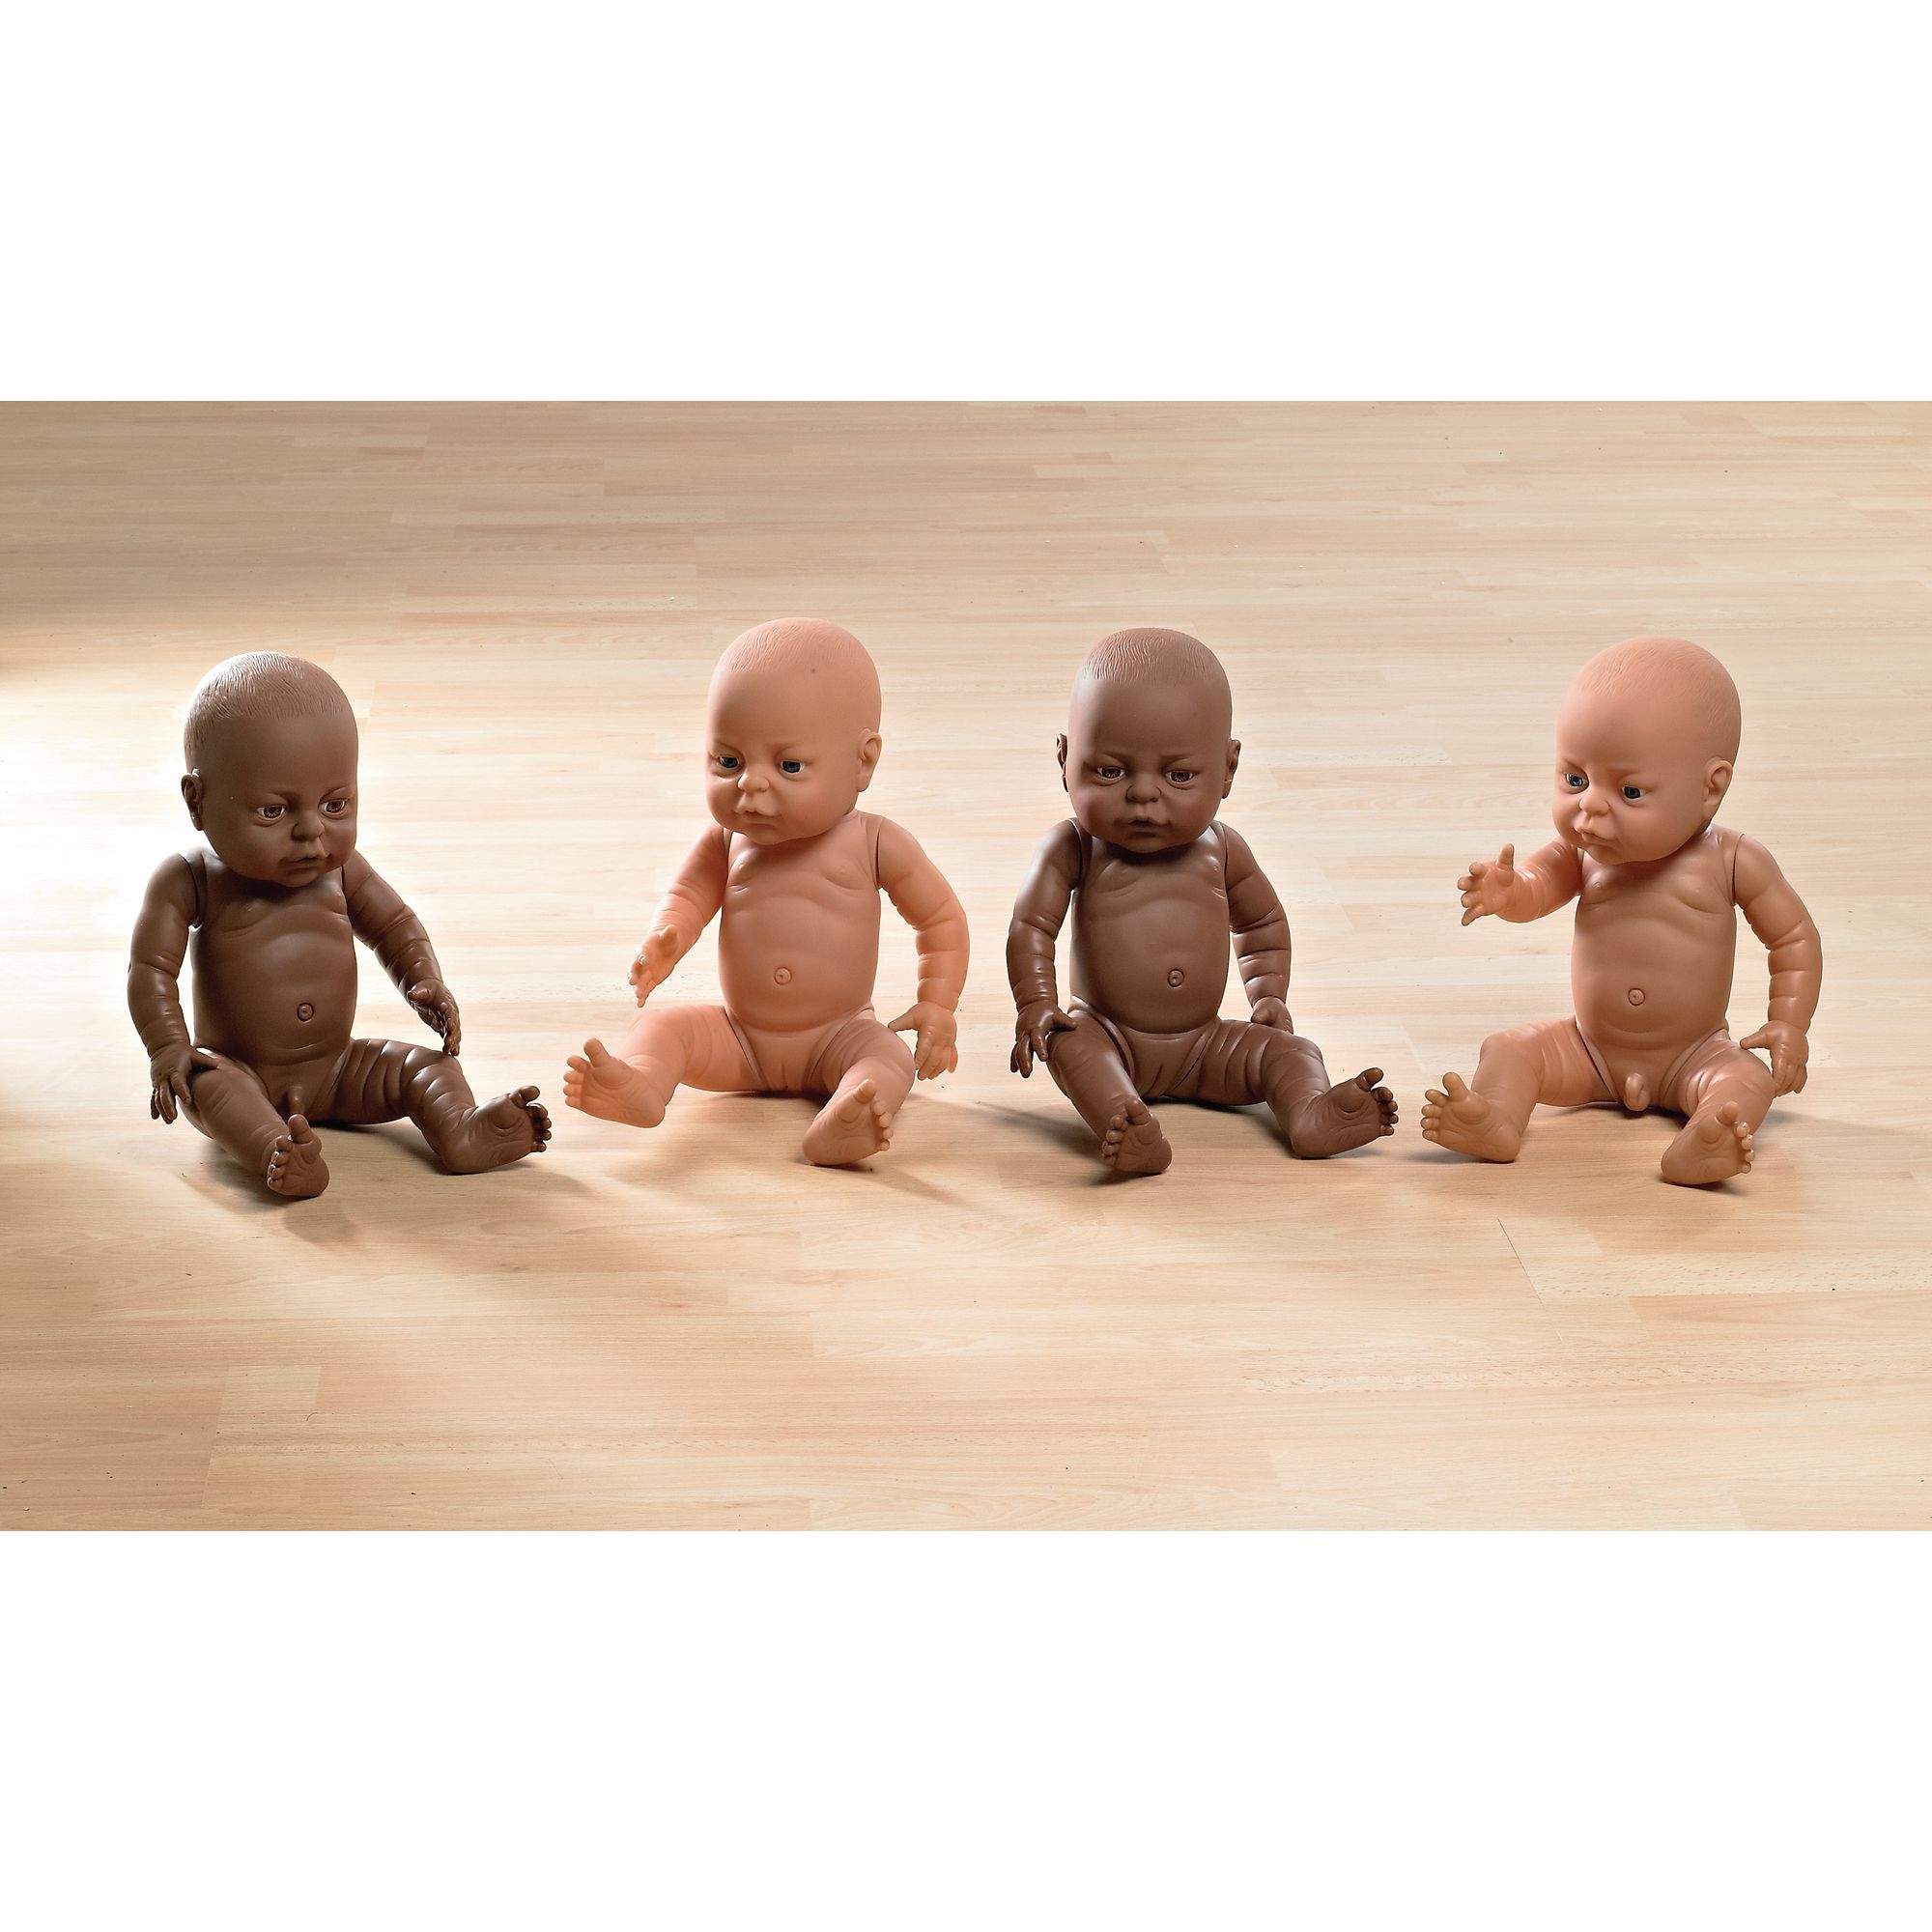 Newborn Baby Doll - Black Boy